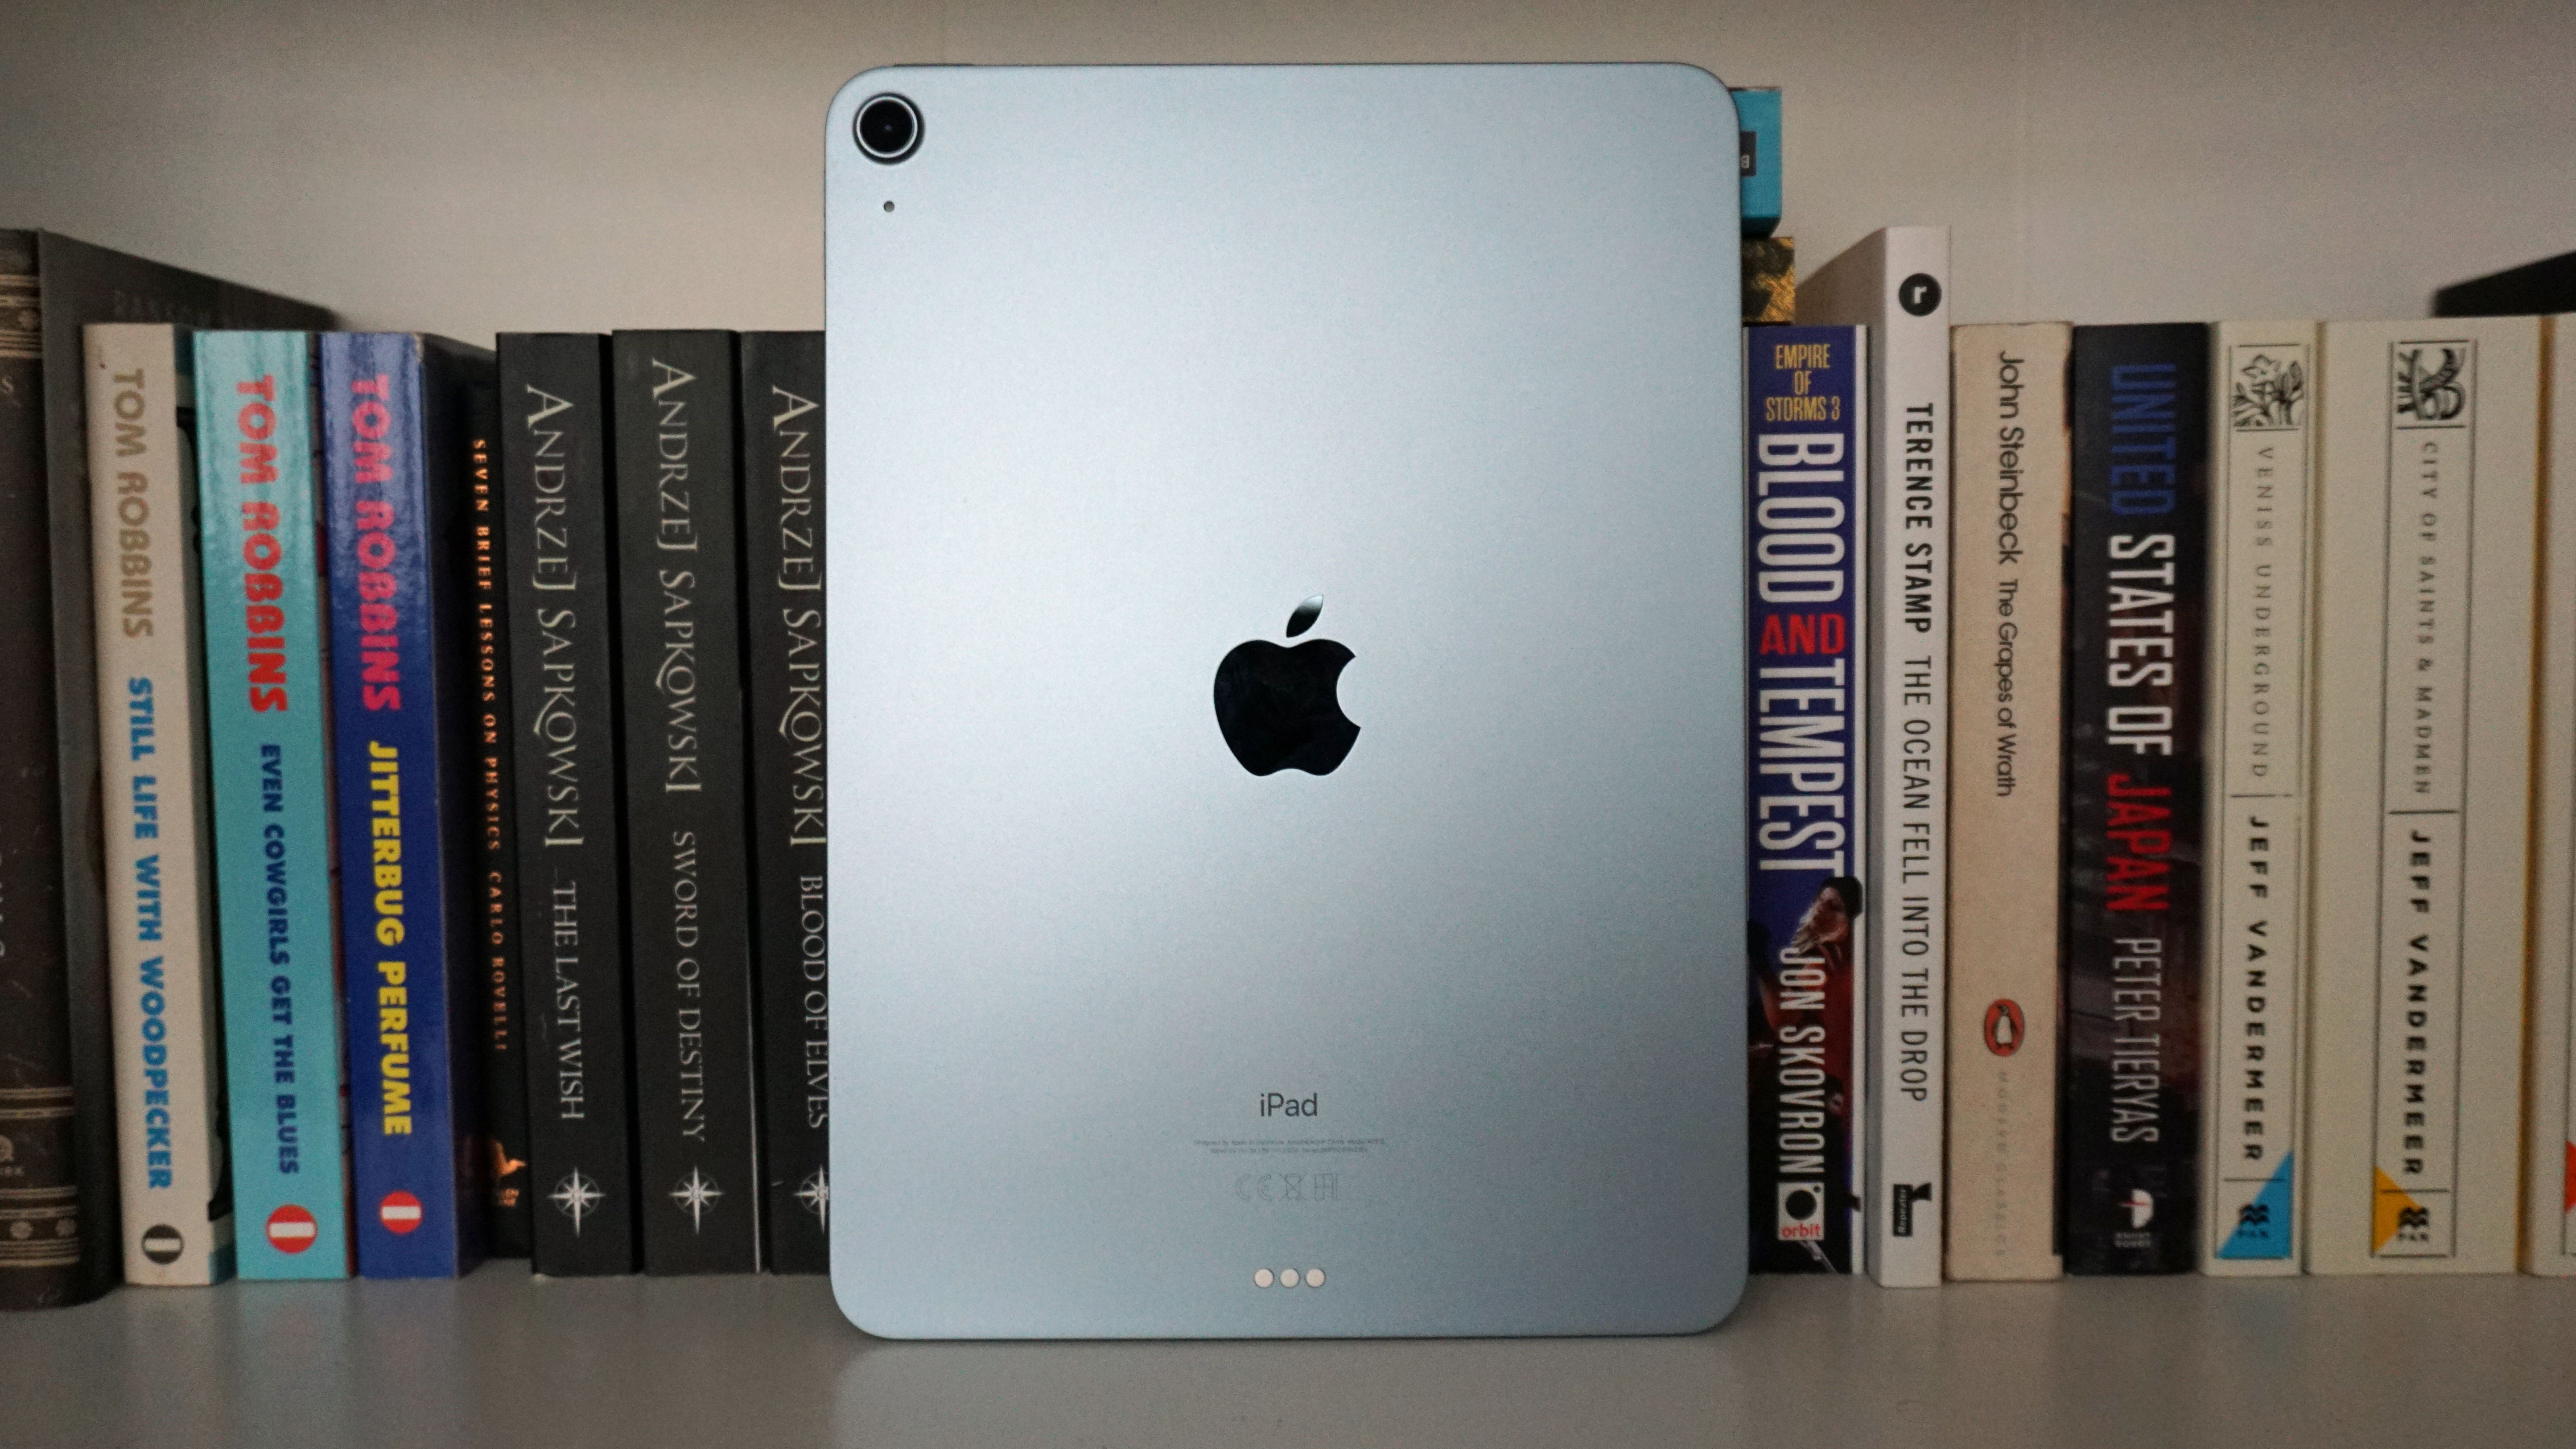 iPad Air 4